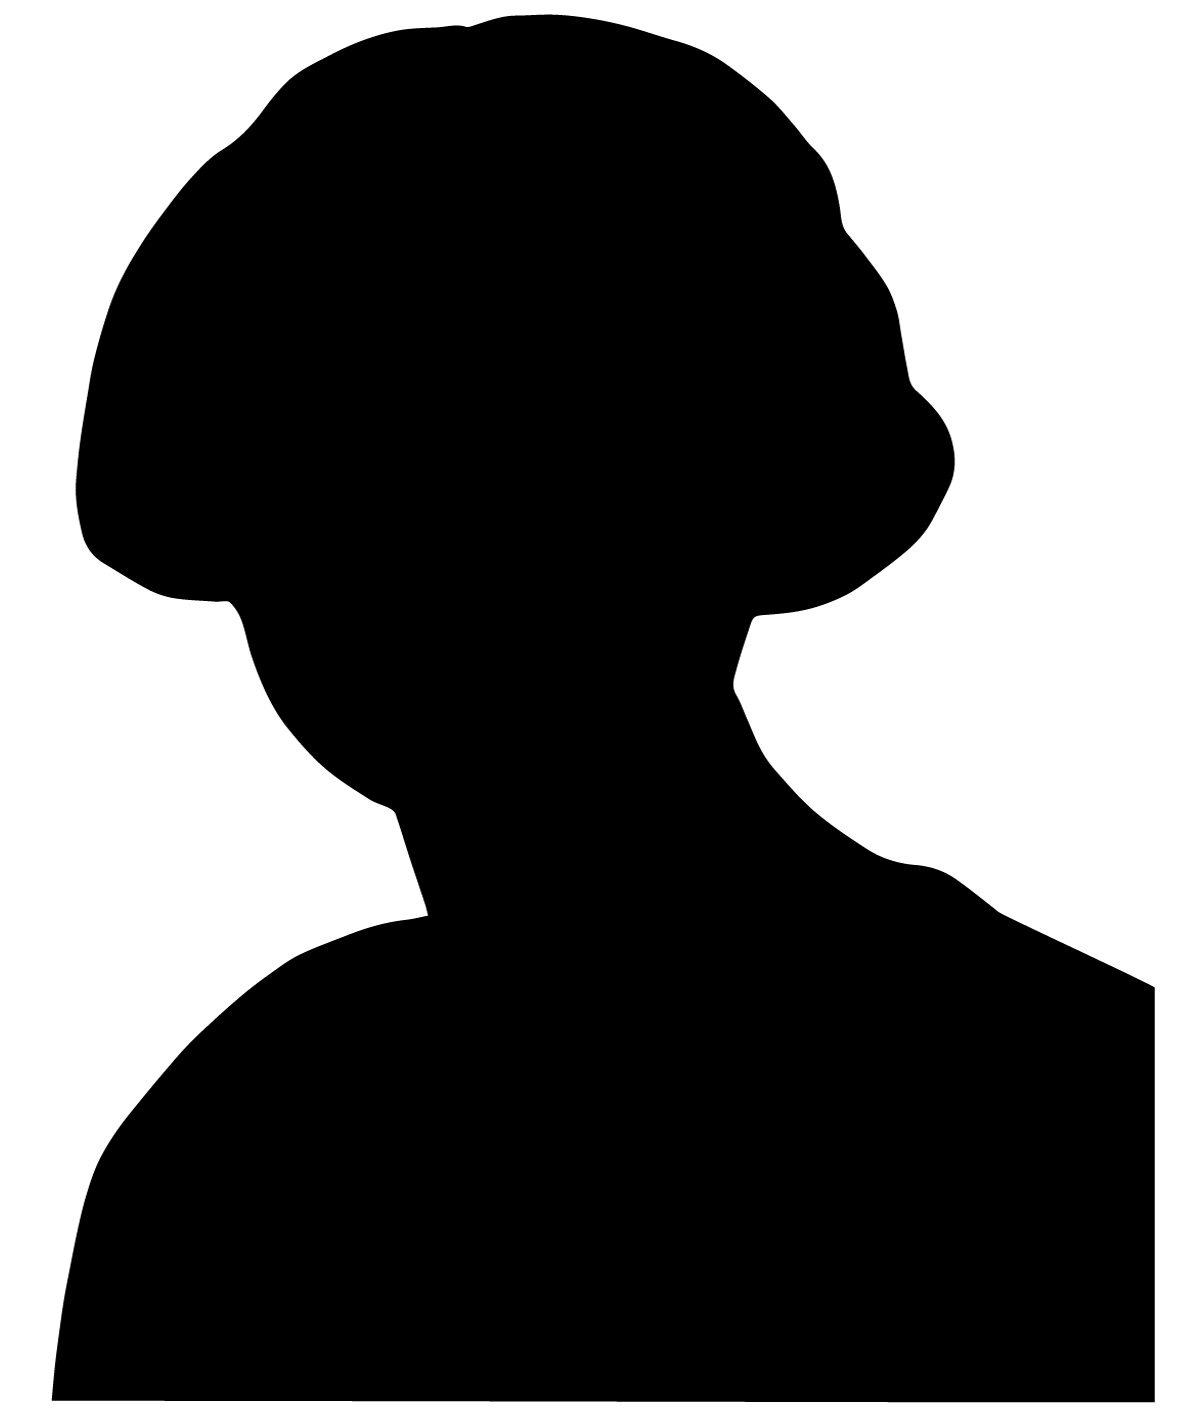 Black silhouette of Ellison Gibb